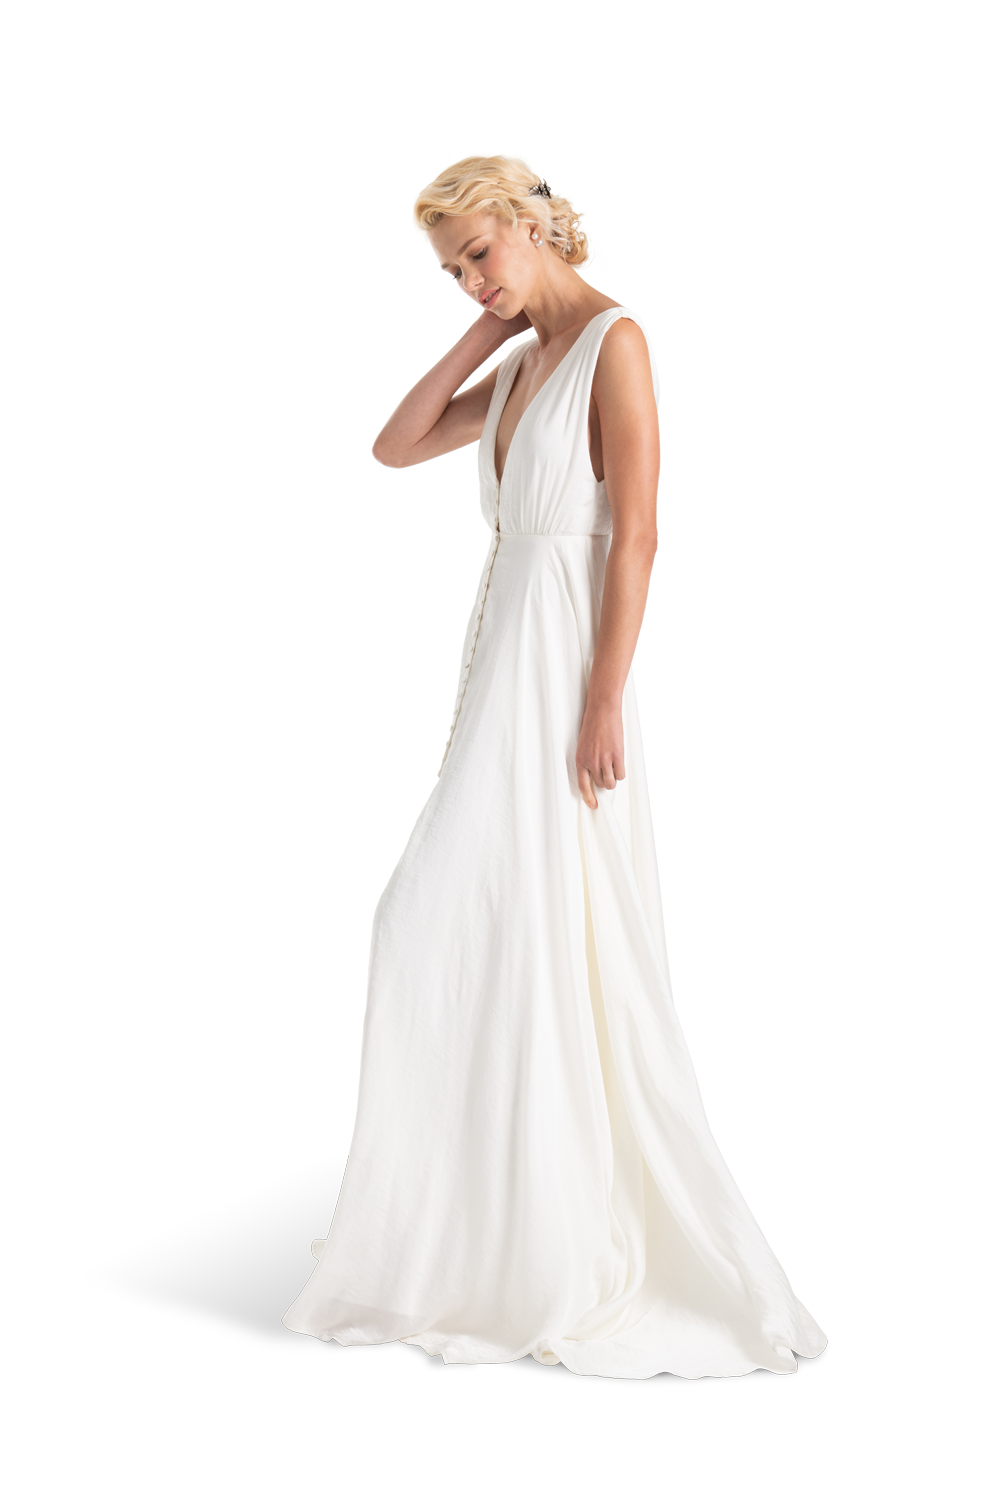 GC#911963 - Joanna August Joplin Dress in Size 12